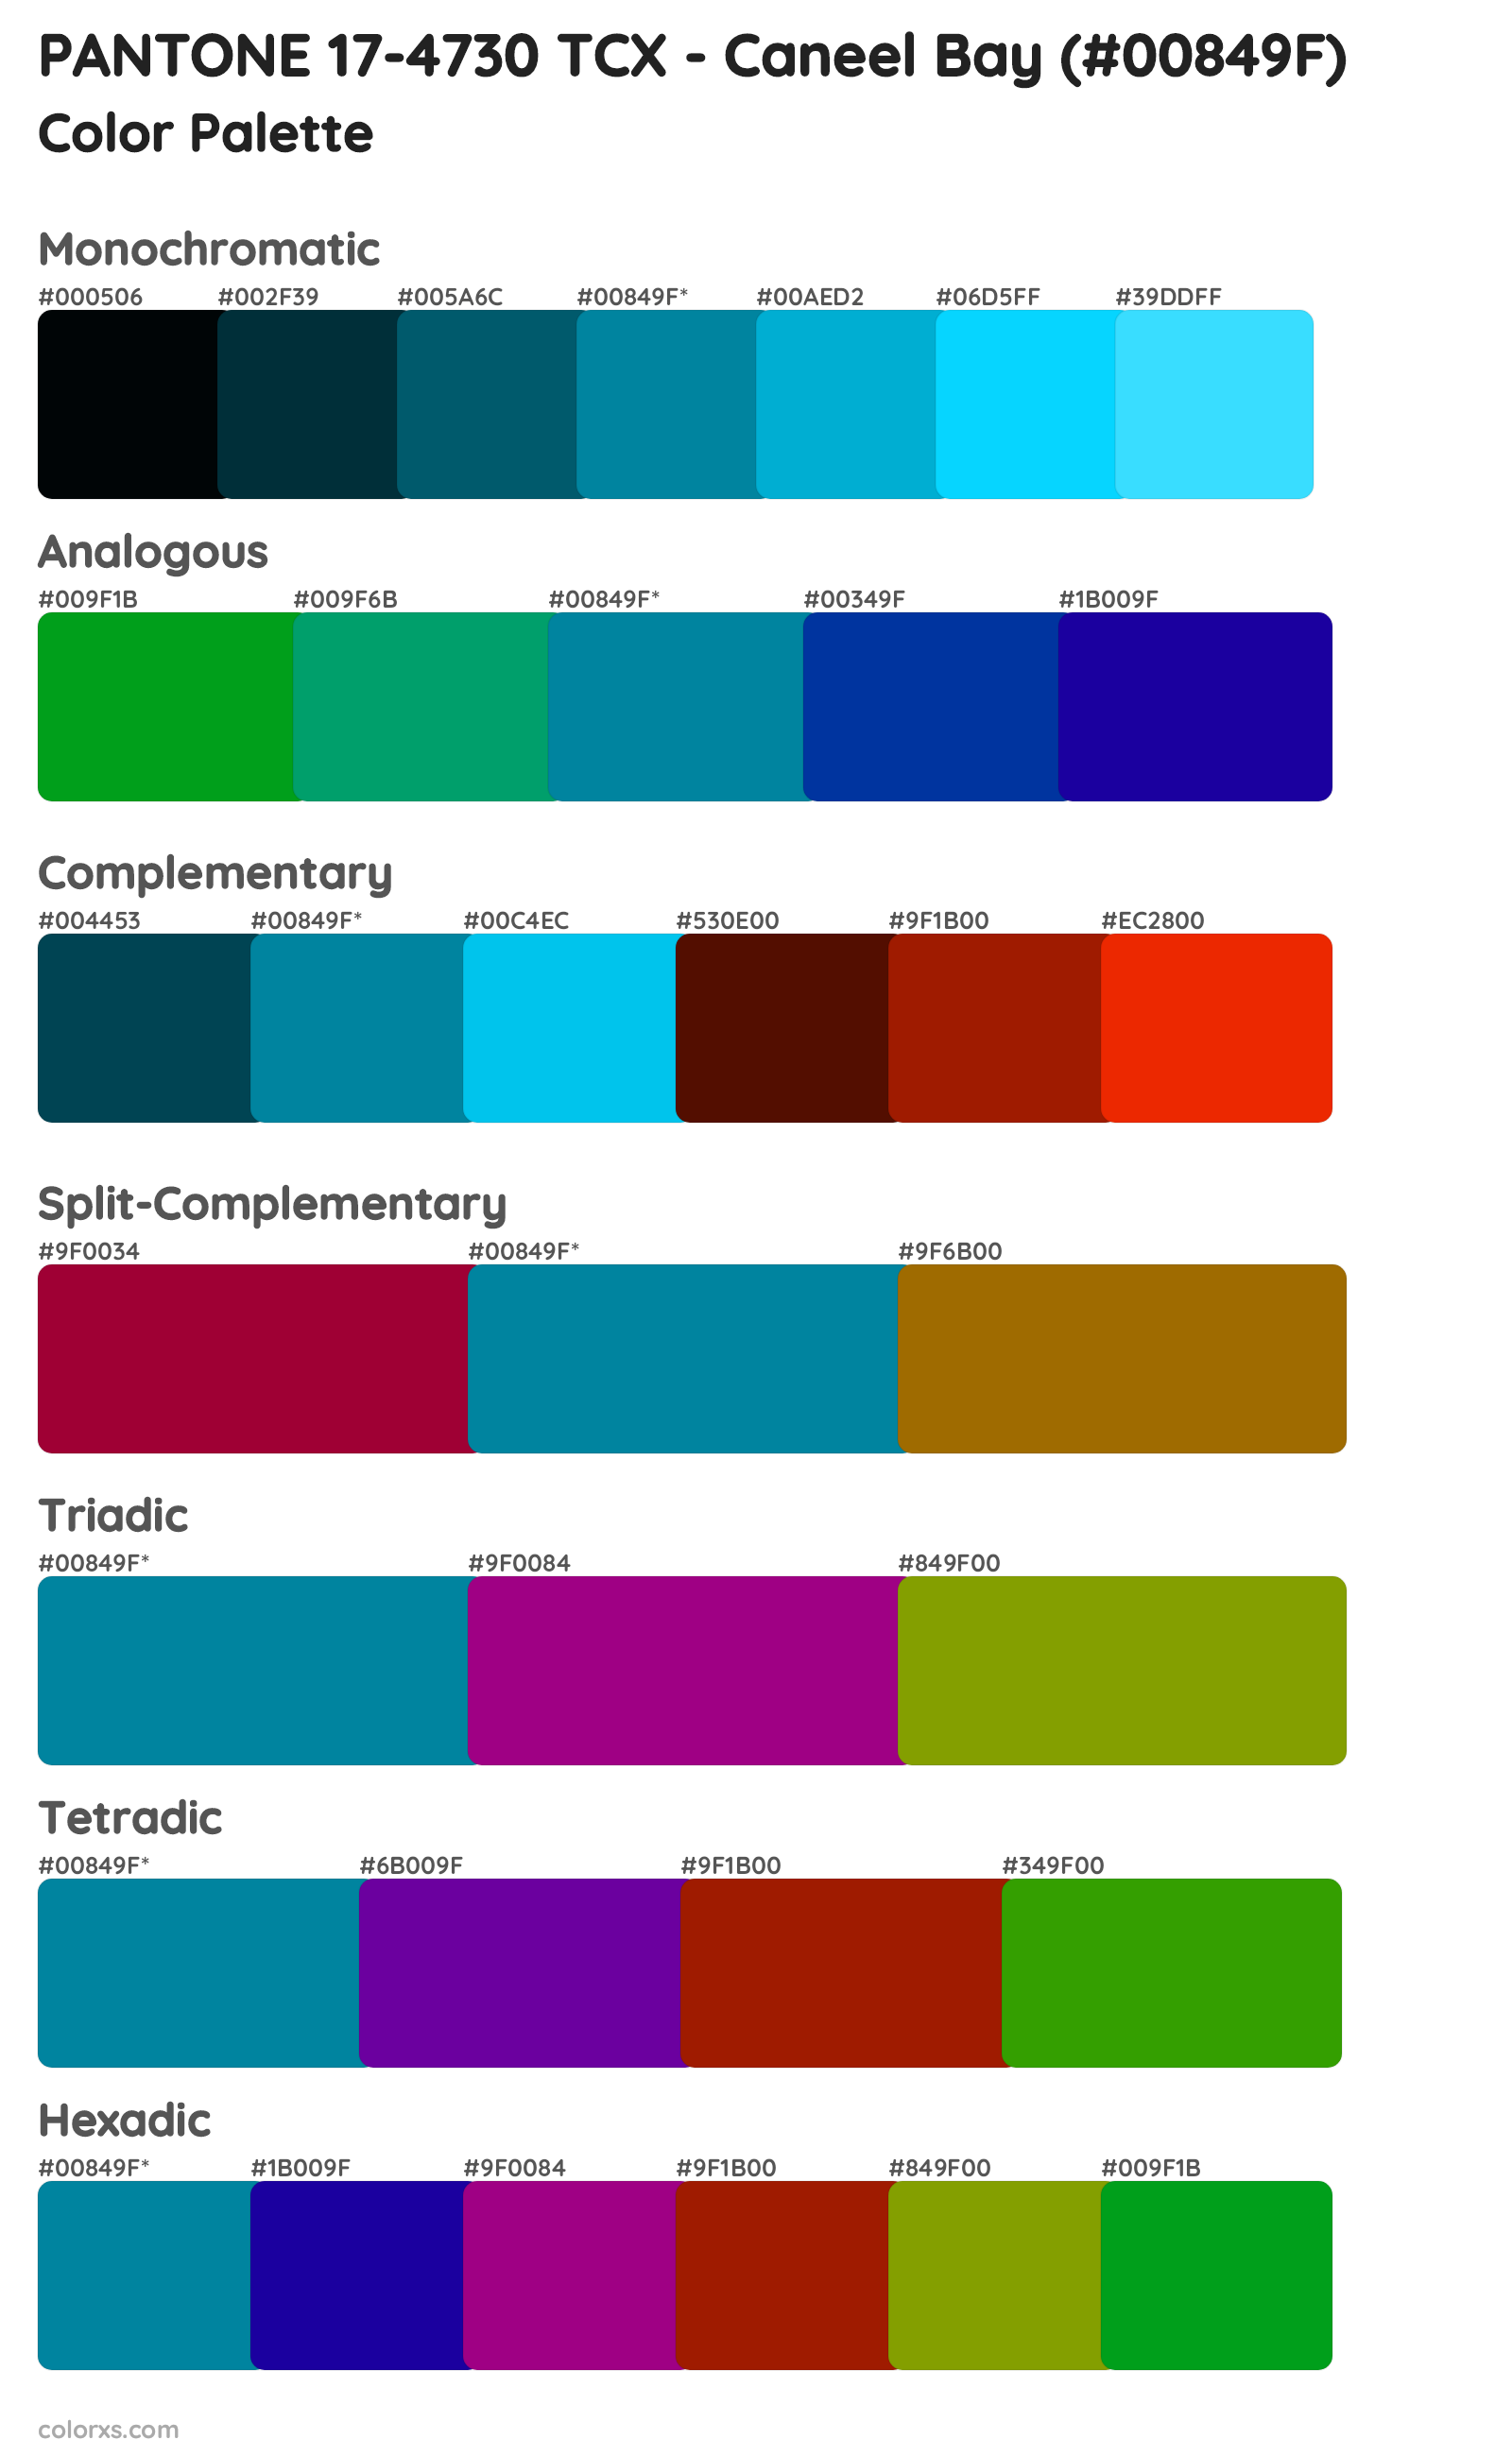 PANTONE 17-4730 TCX - Caneel Bay Color Scheme Palettes